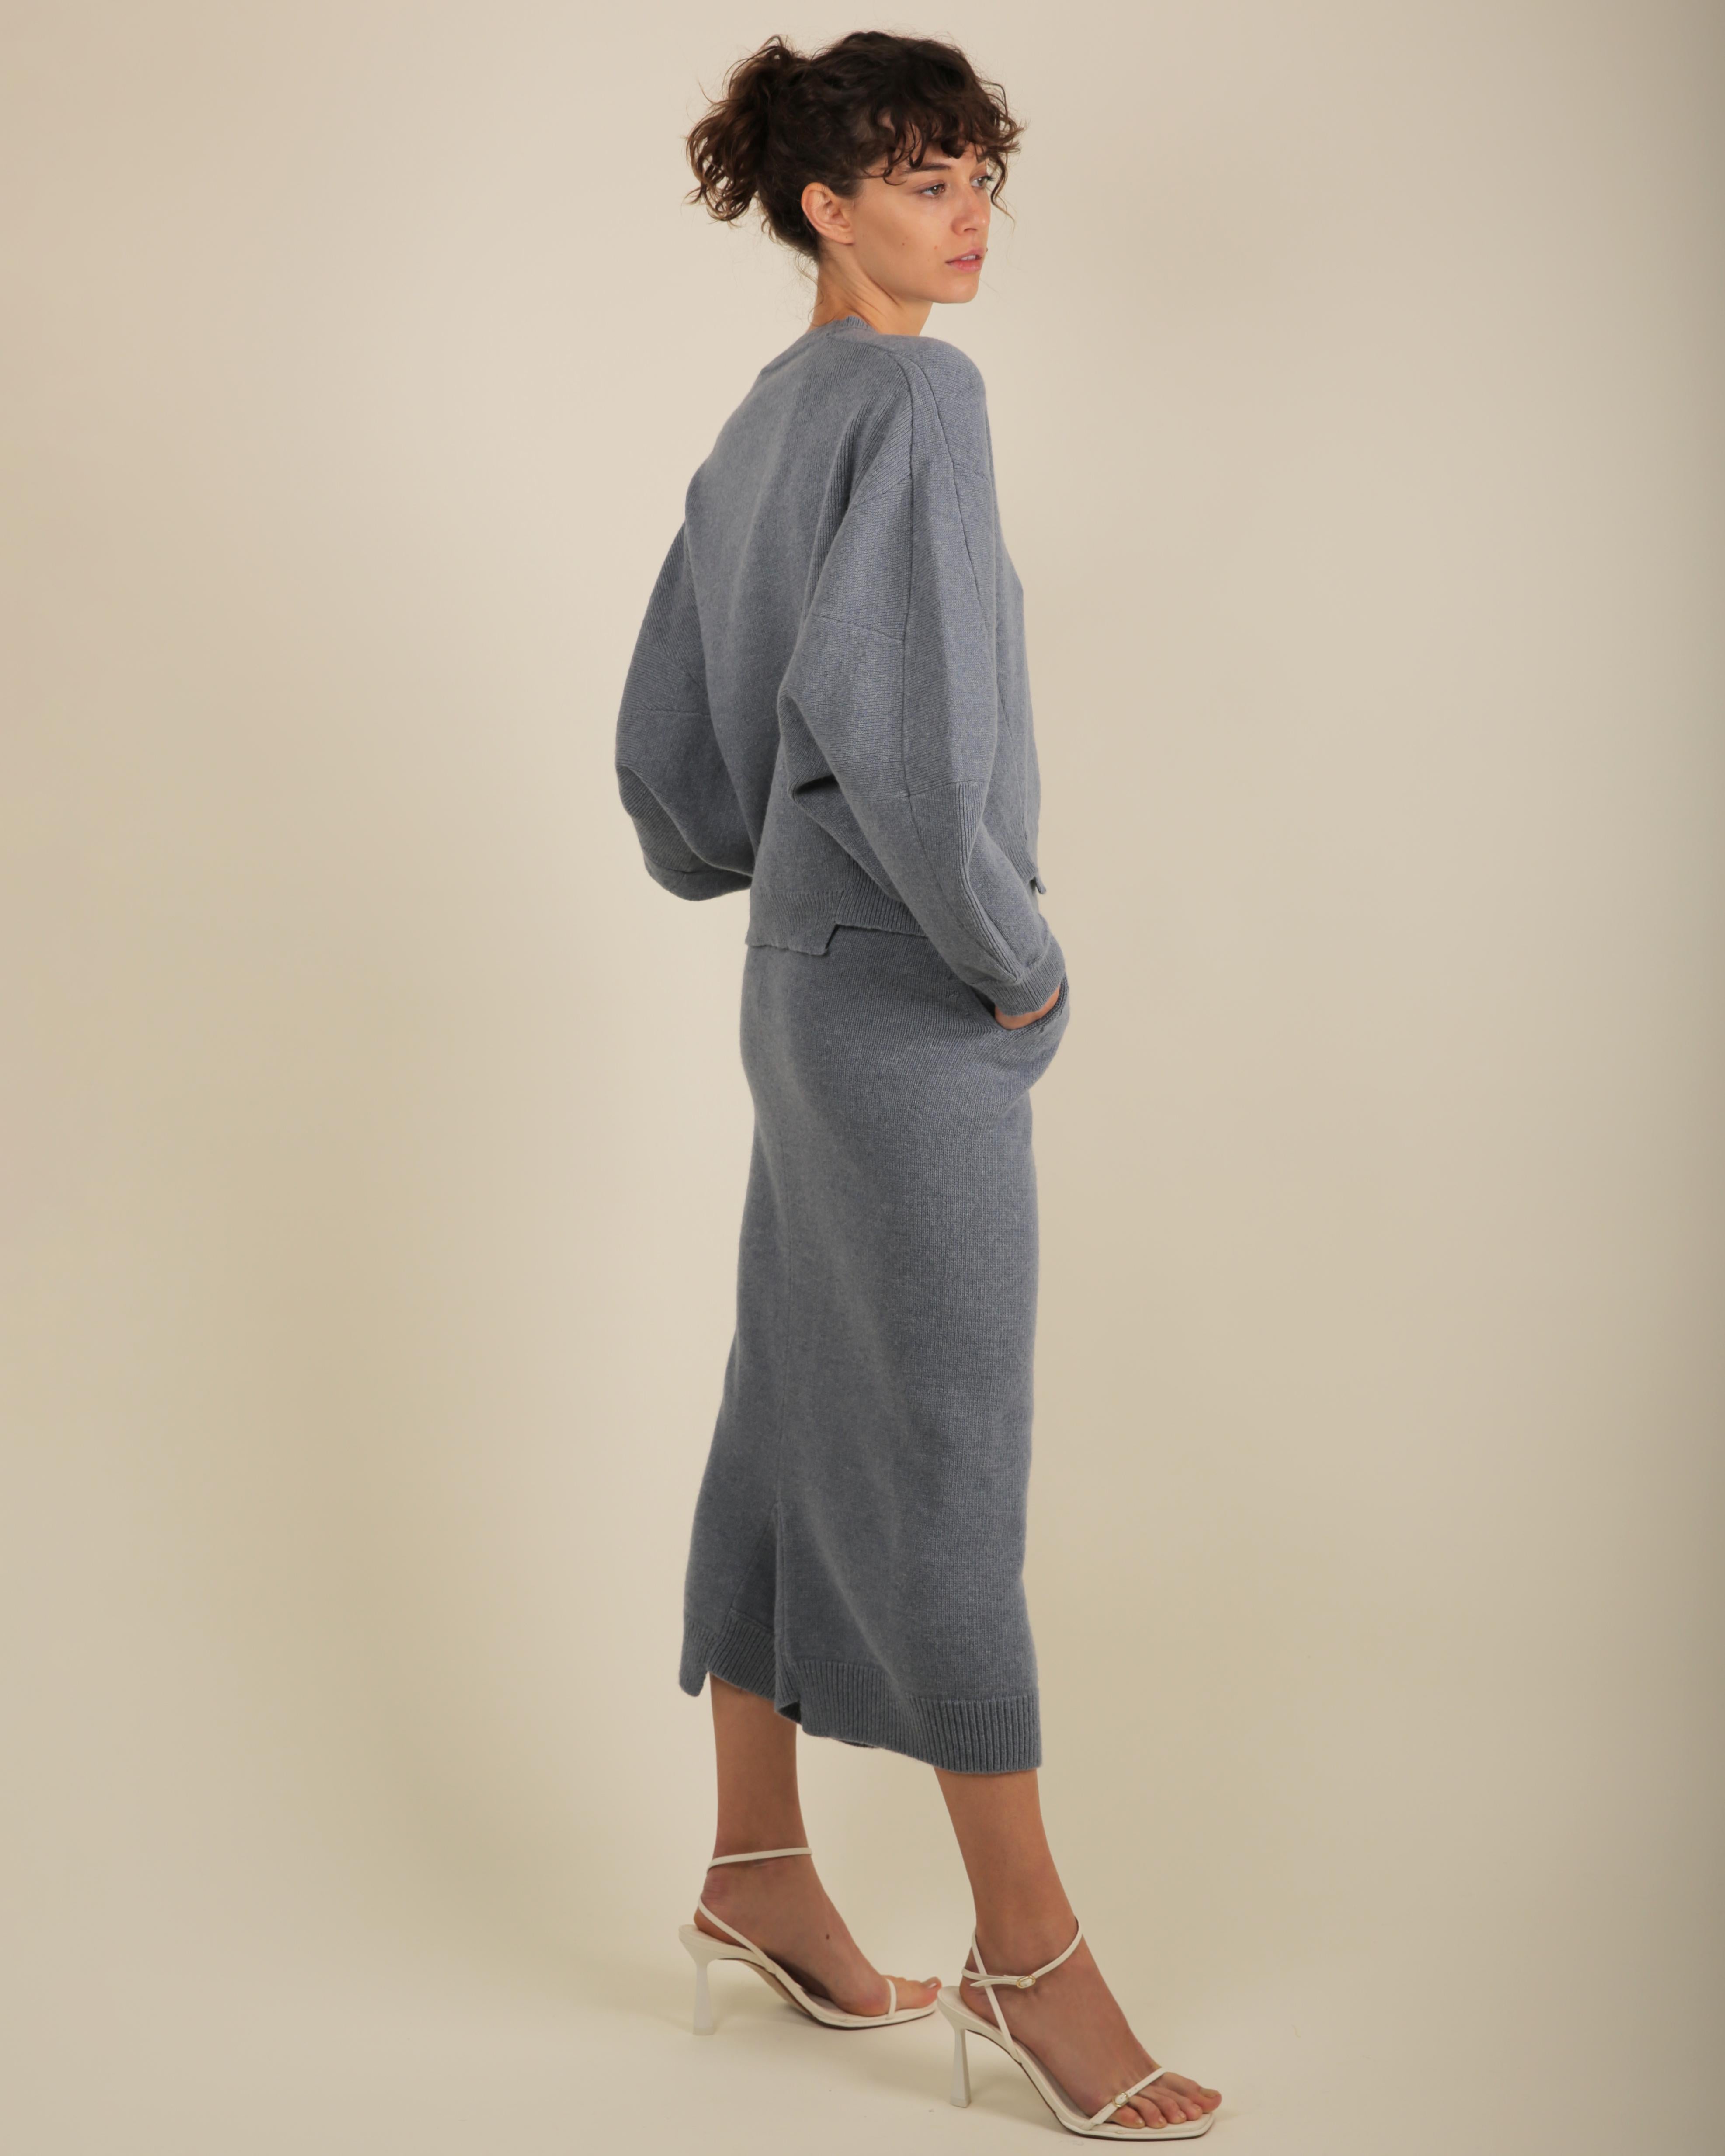 Stella McCartney Fall18 blue oversized wool alpaca matching sweater dress pants For Sale 9